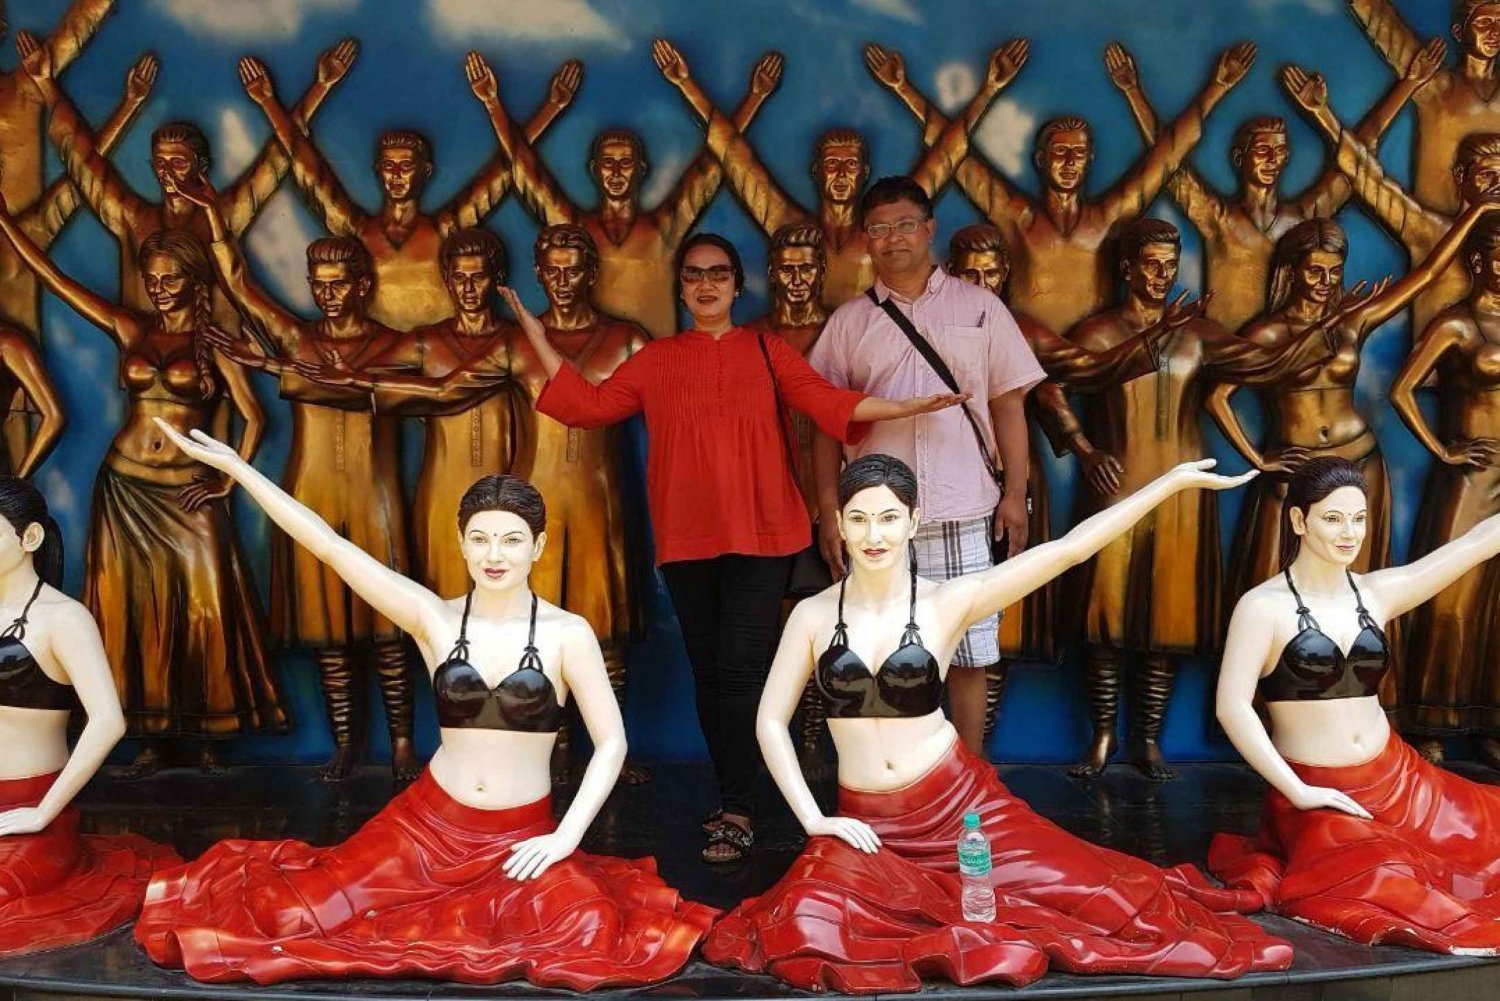 Tournée Bollywood avec spectacle de danse